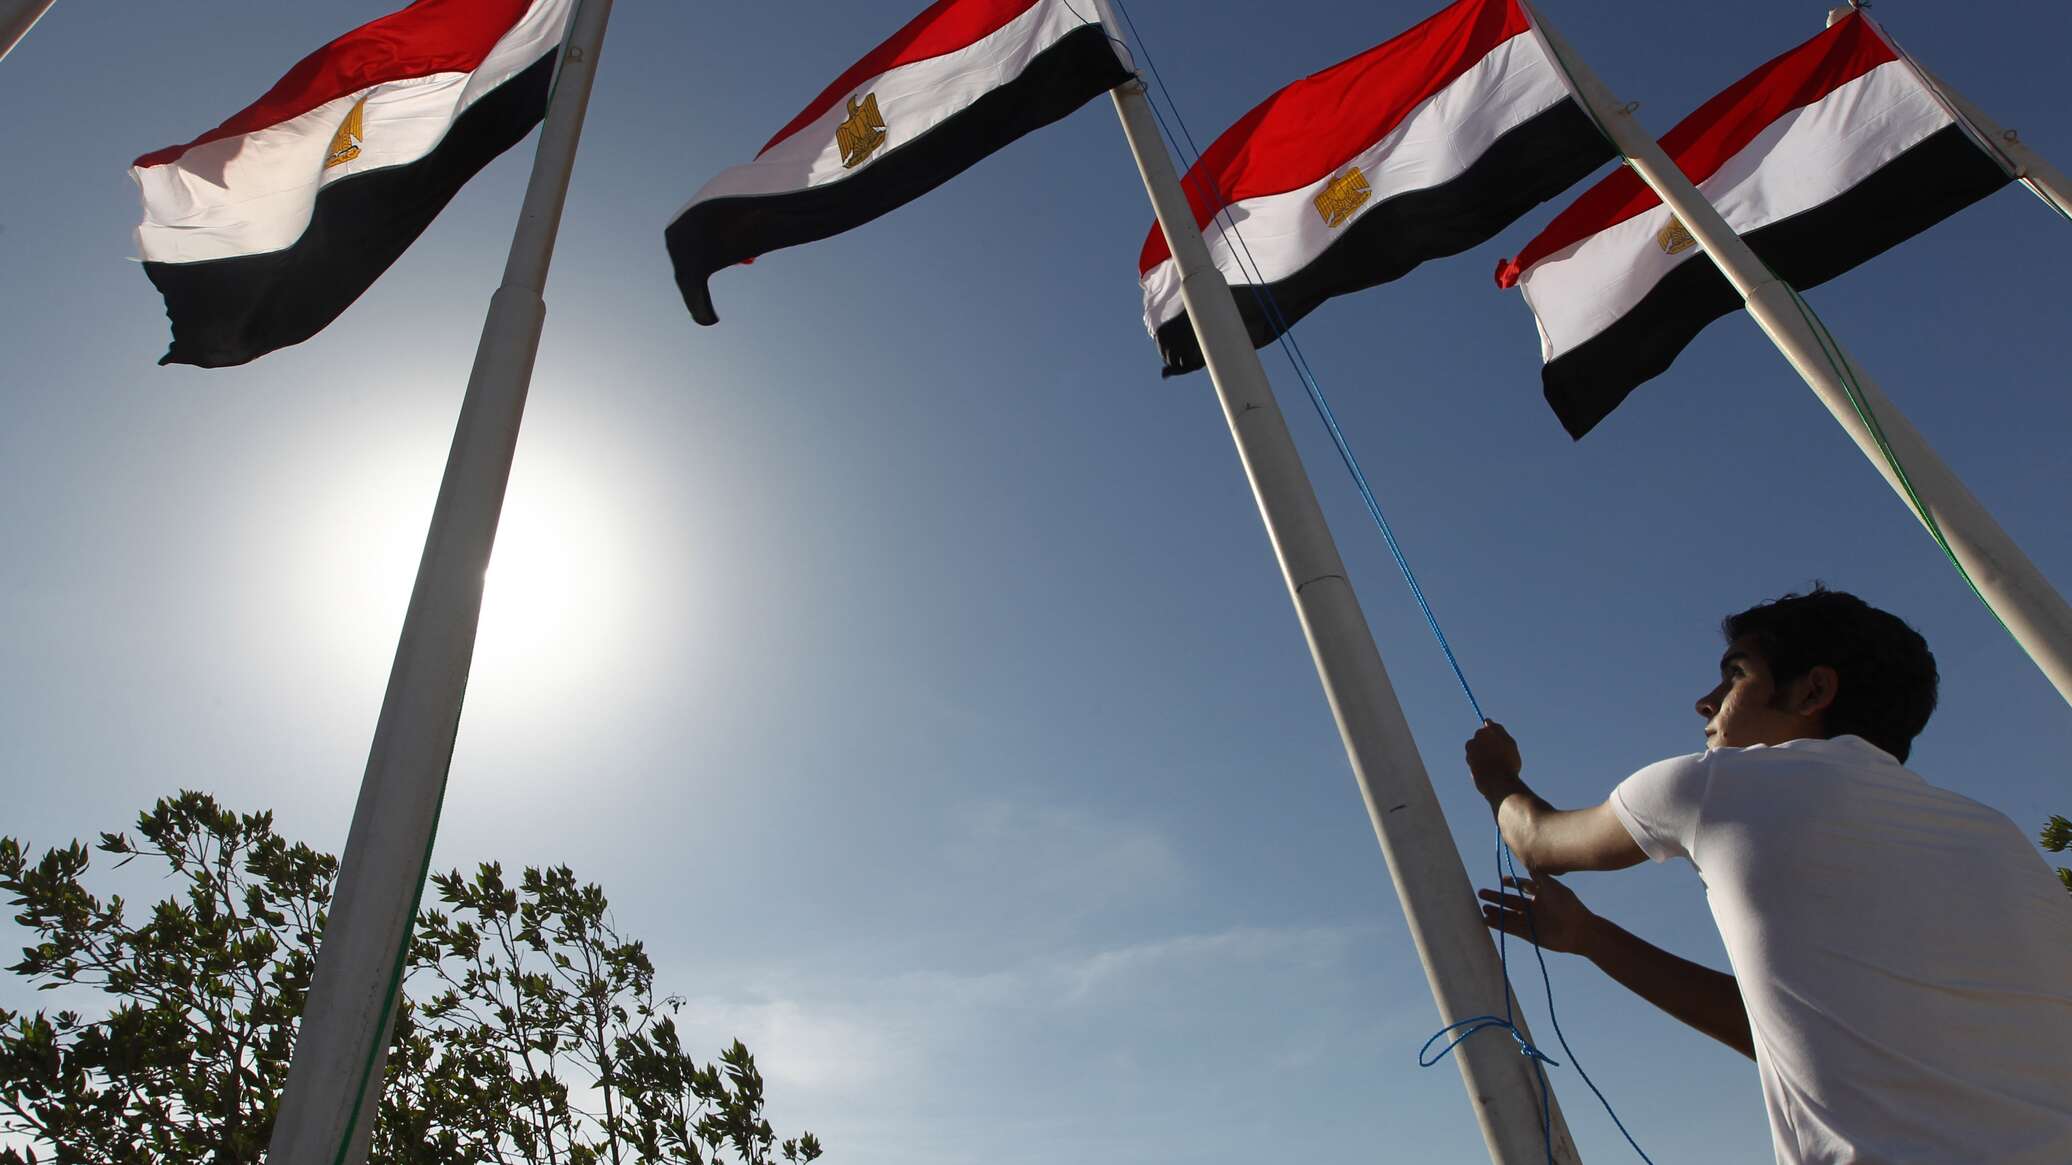 أحكام بالإعدام لقيادات الإخوان المسلمين في مصر